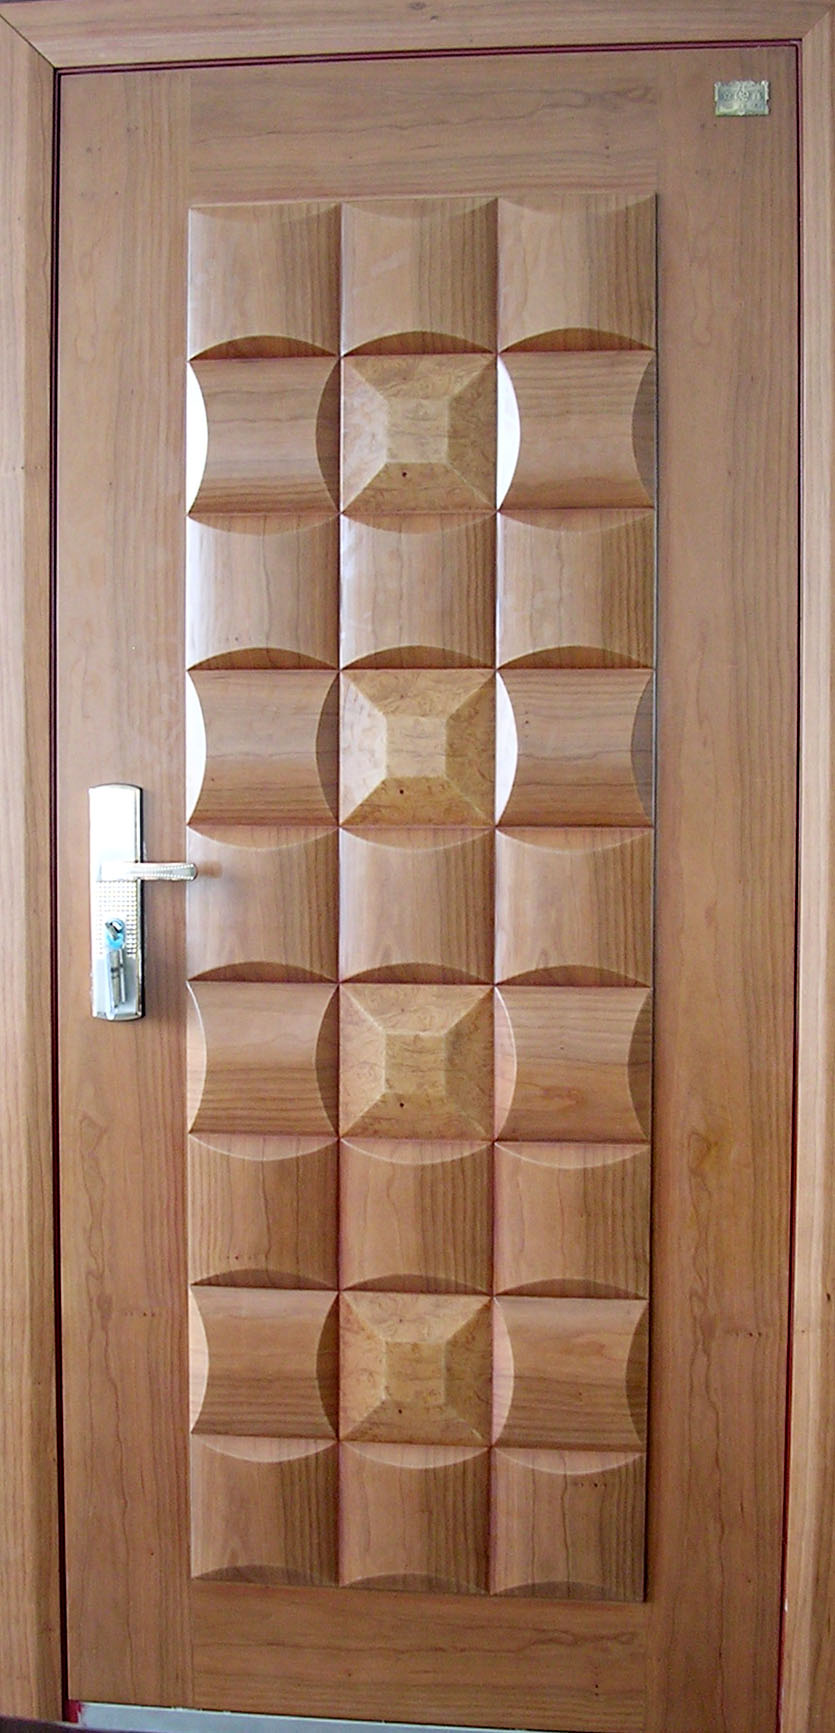 Steel-wood door